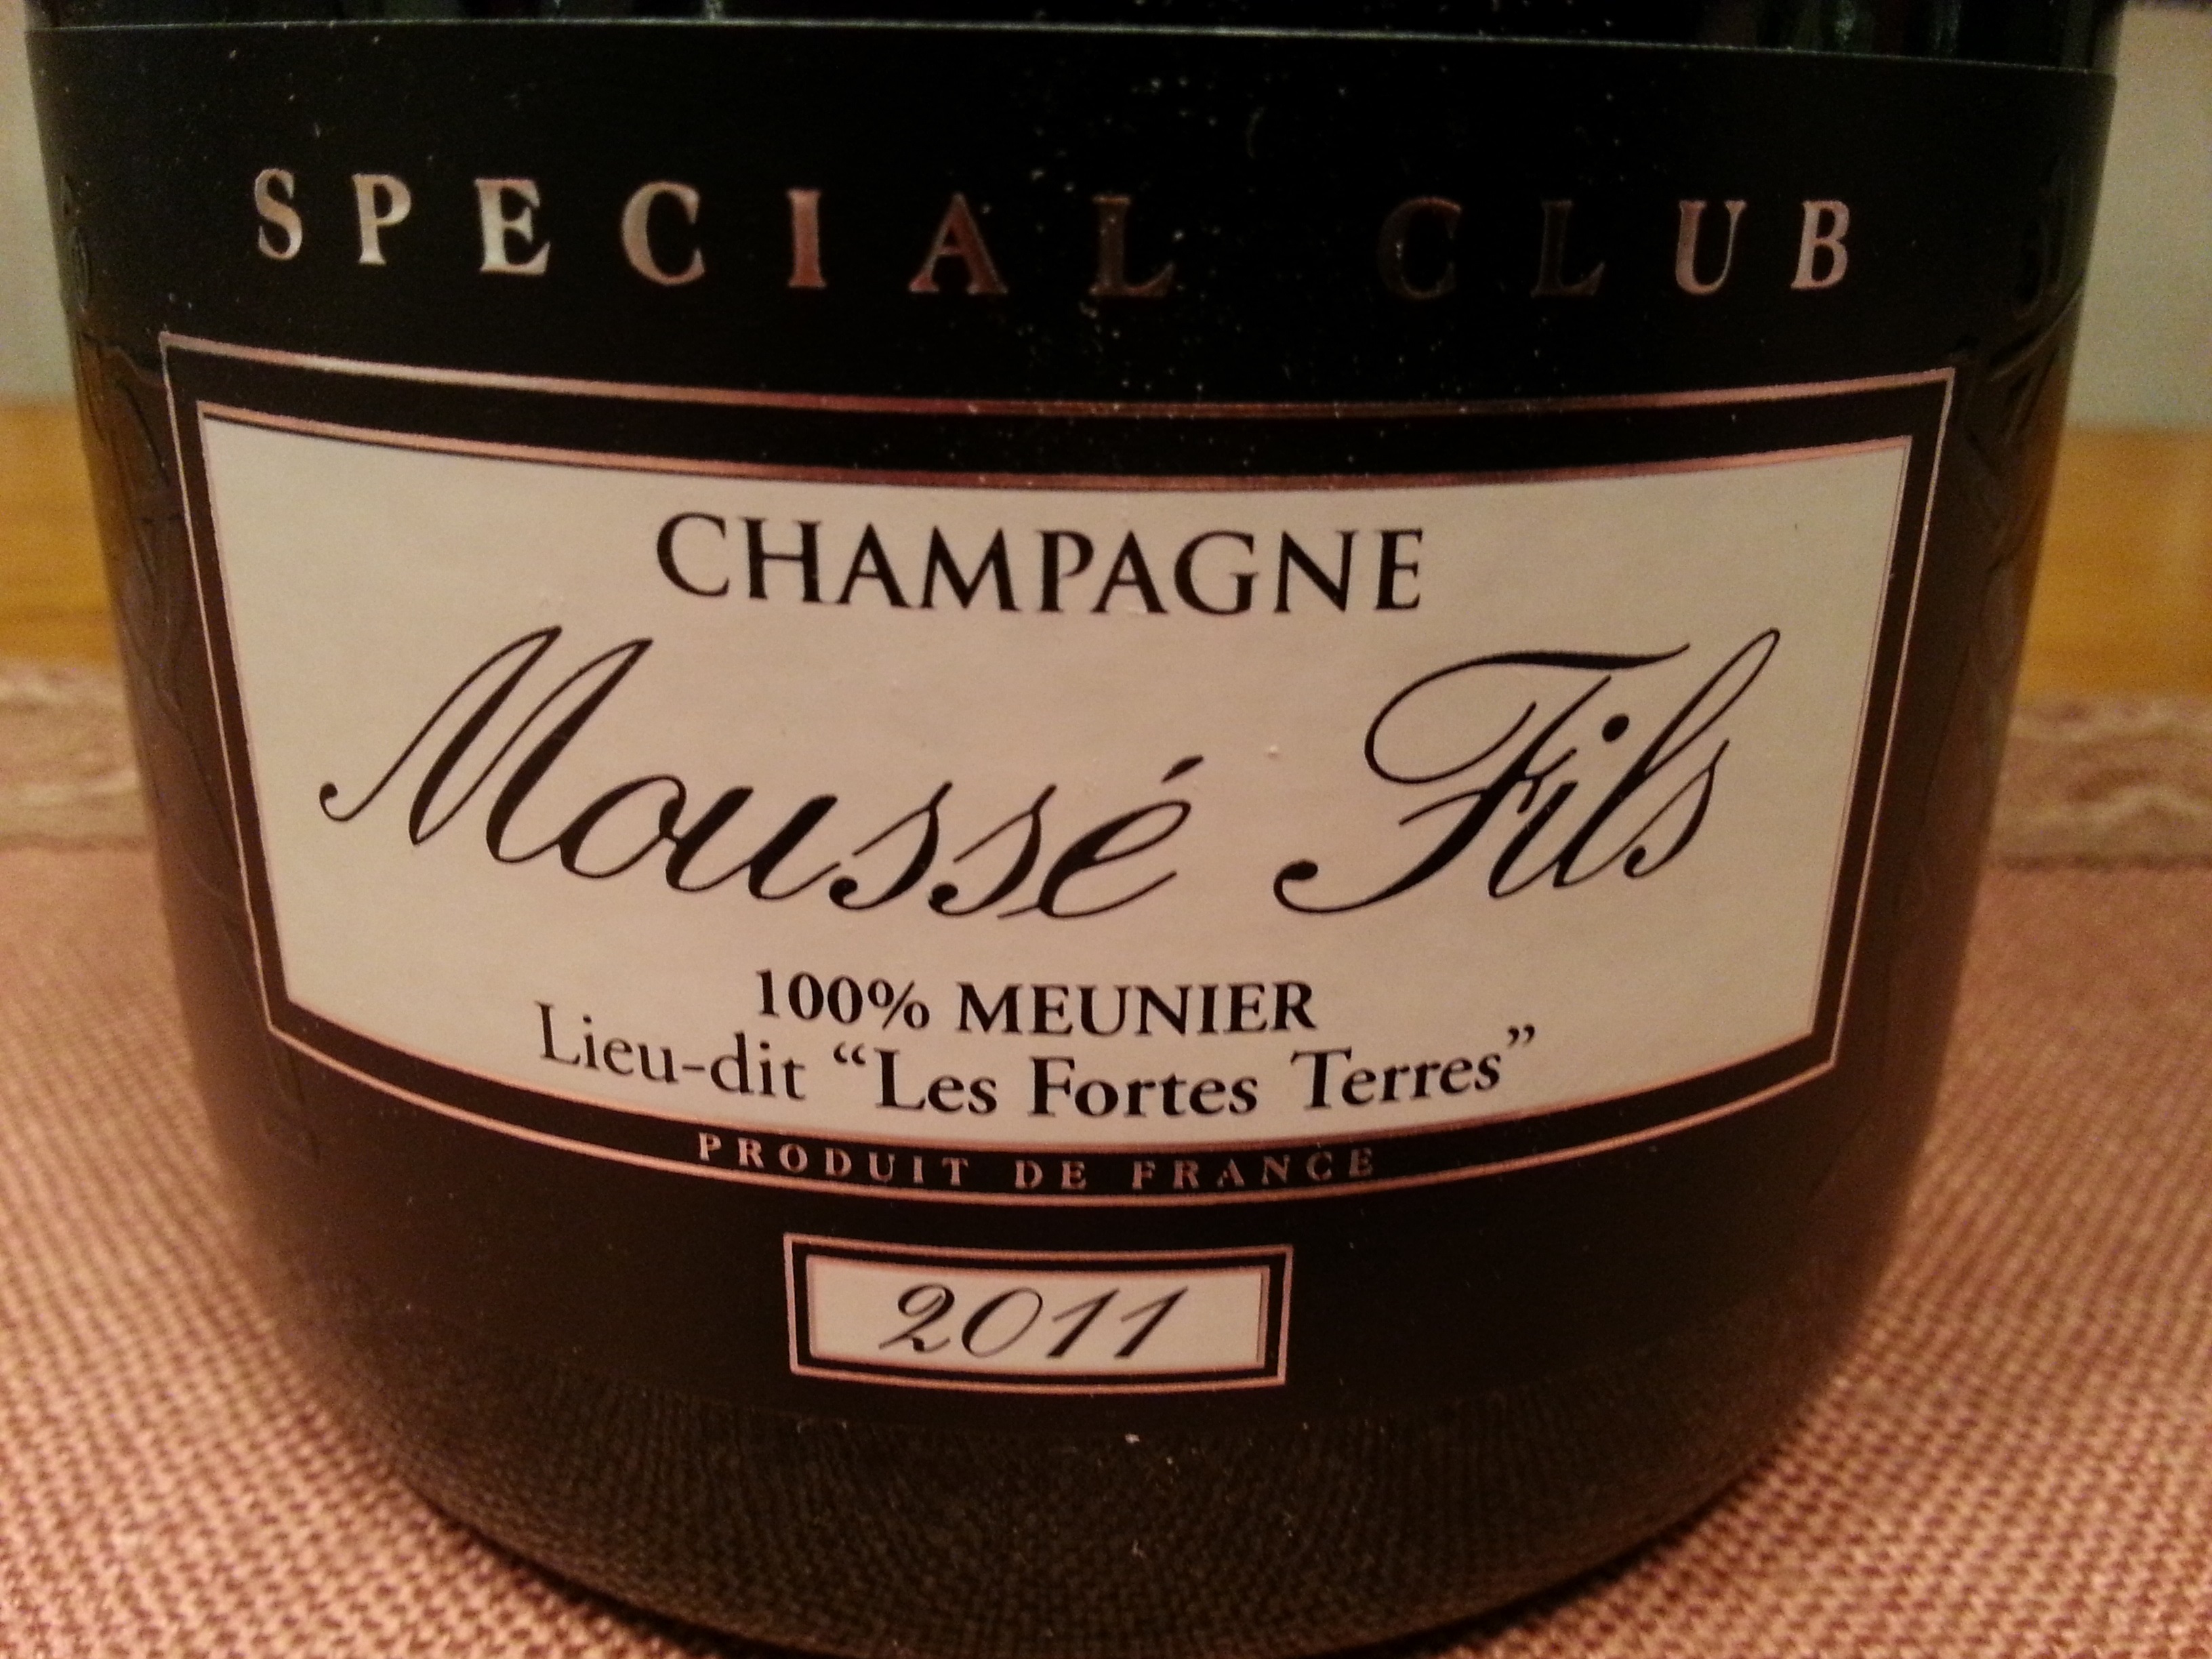 2011 Champagne Special Club Les Fortes Terres | Moussé-Fils